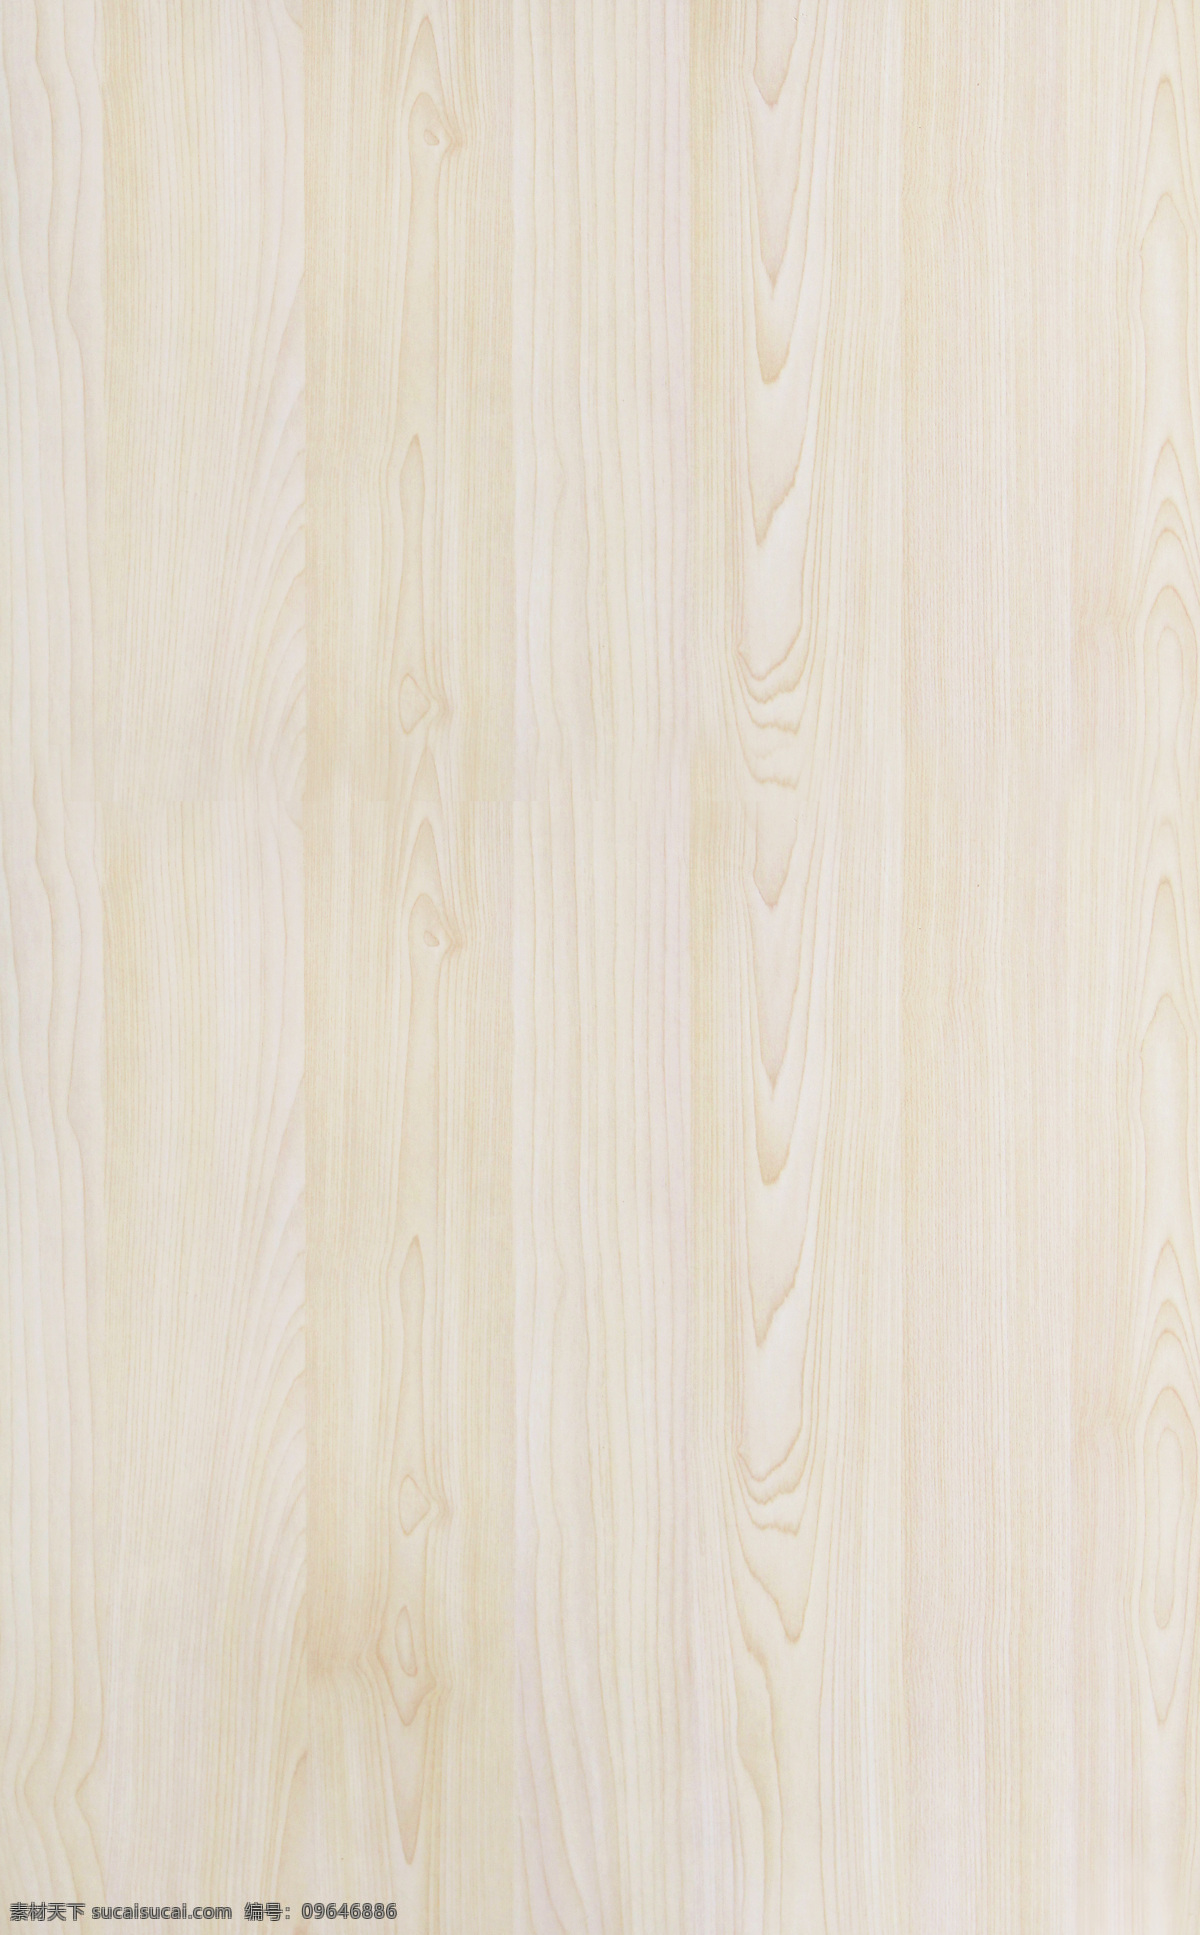 黄枫 木皮图片 木纹 竖纹 贴图 地板 木板 纹理 背景 底纹边框 其他素材